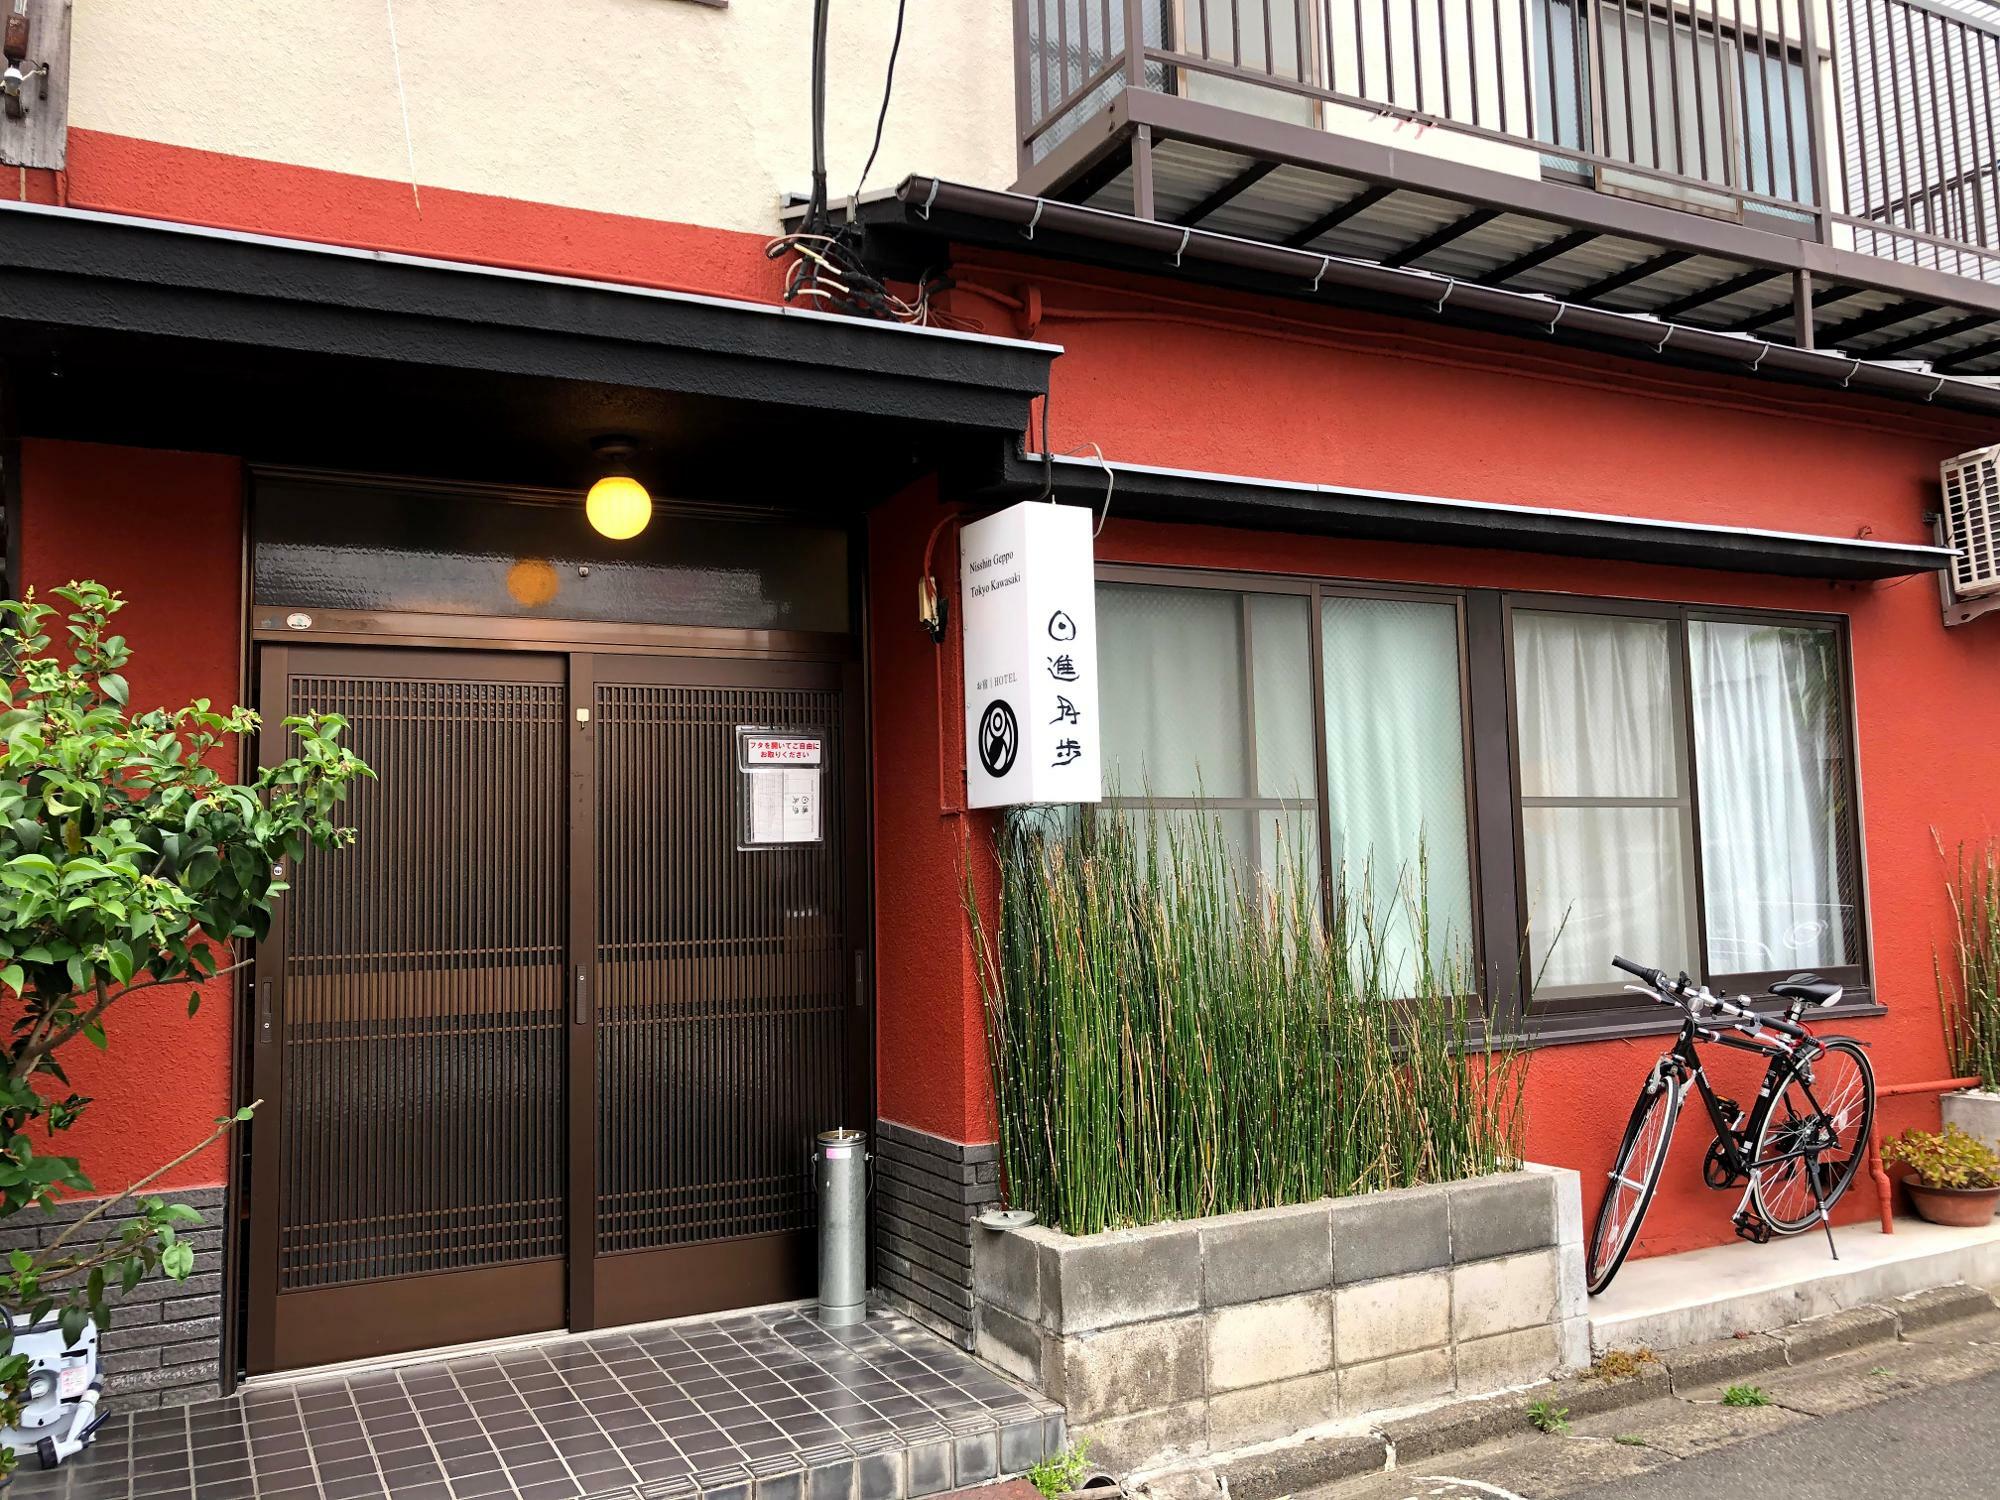 日進月歩の外観、一見京都の町屋旅館のようですね